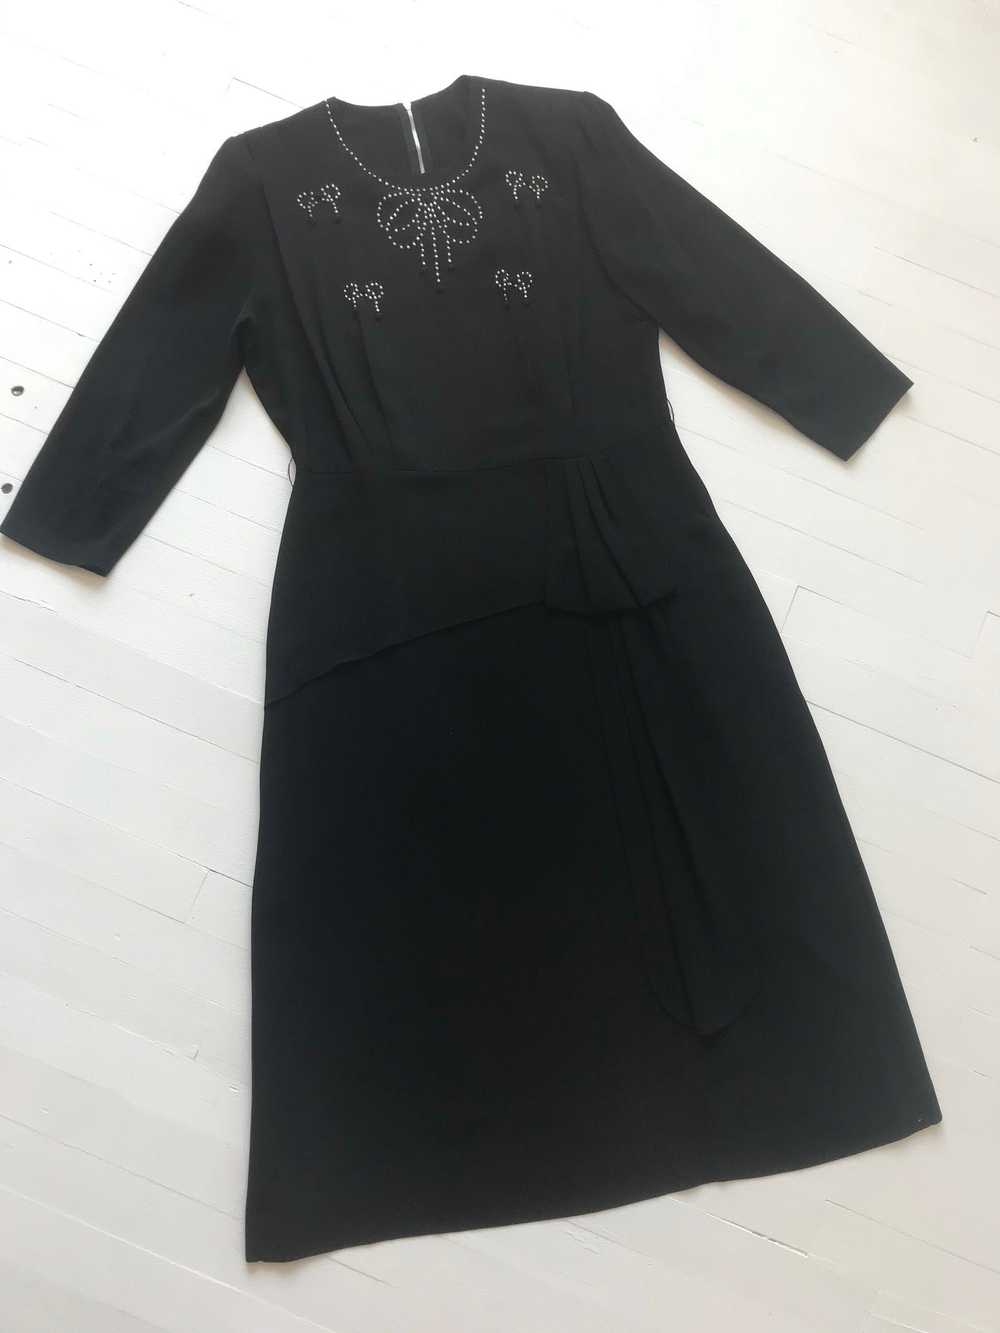 1940s Studded Black Crepe Rayon Dress - image 7